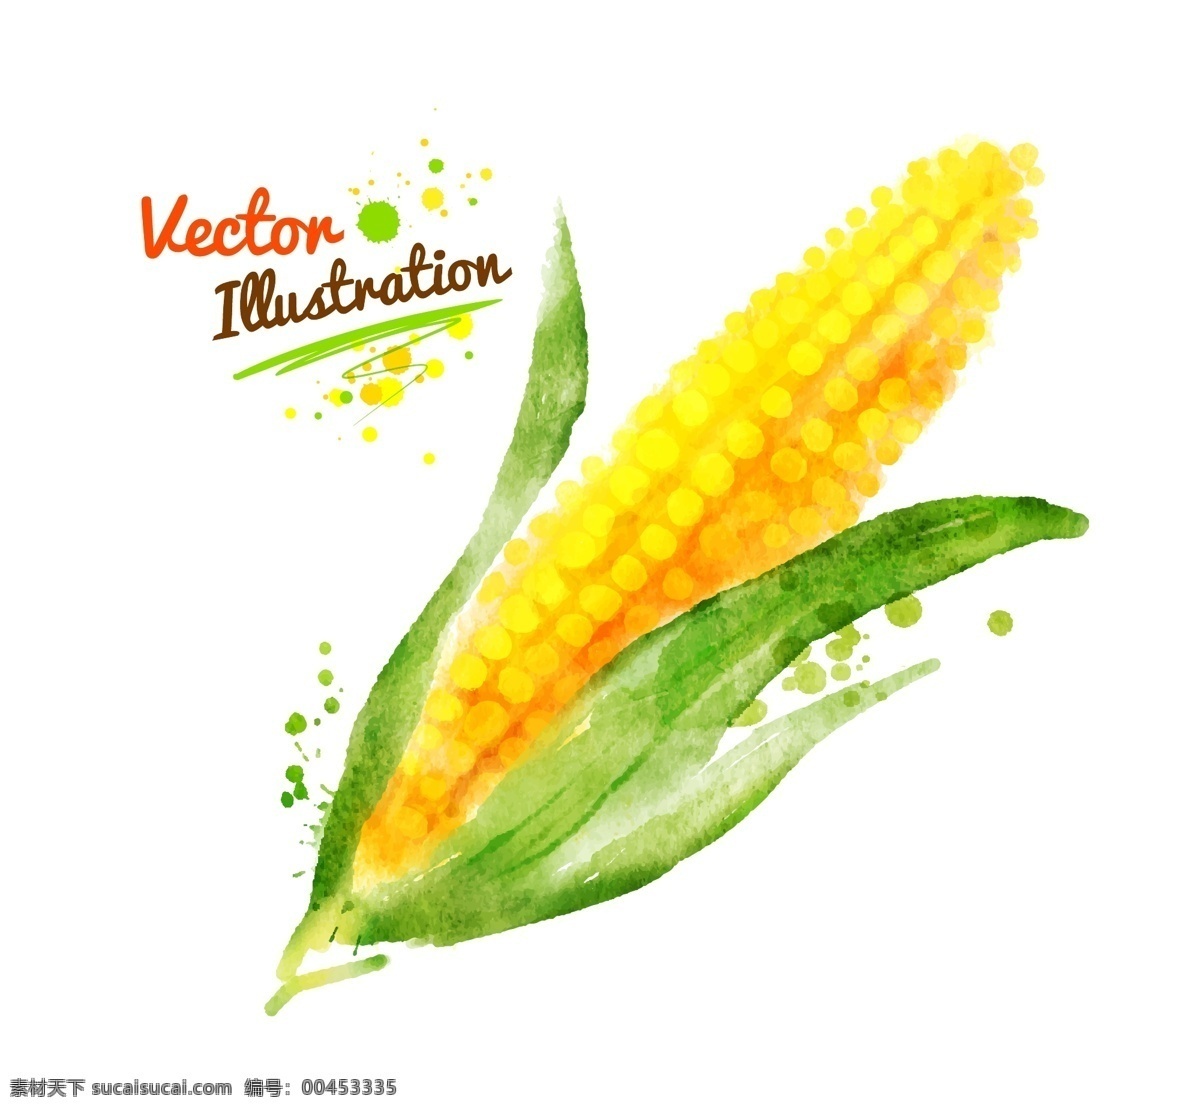 创意 喷溅 水彩 墨迹 玉米 蔬菜 矢量 黄色 插画 水墨 手绘 墨点